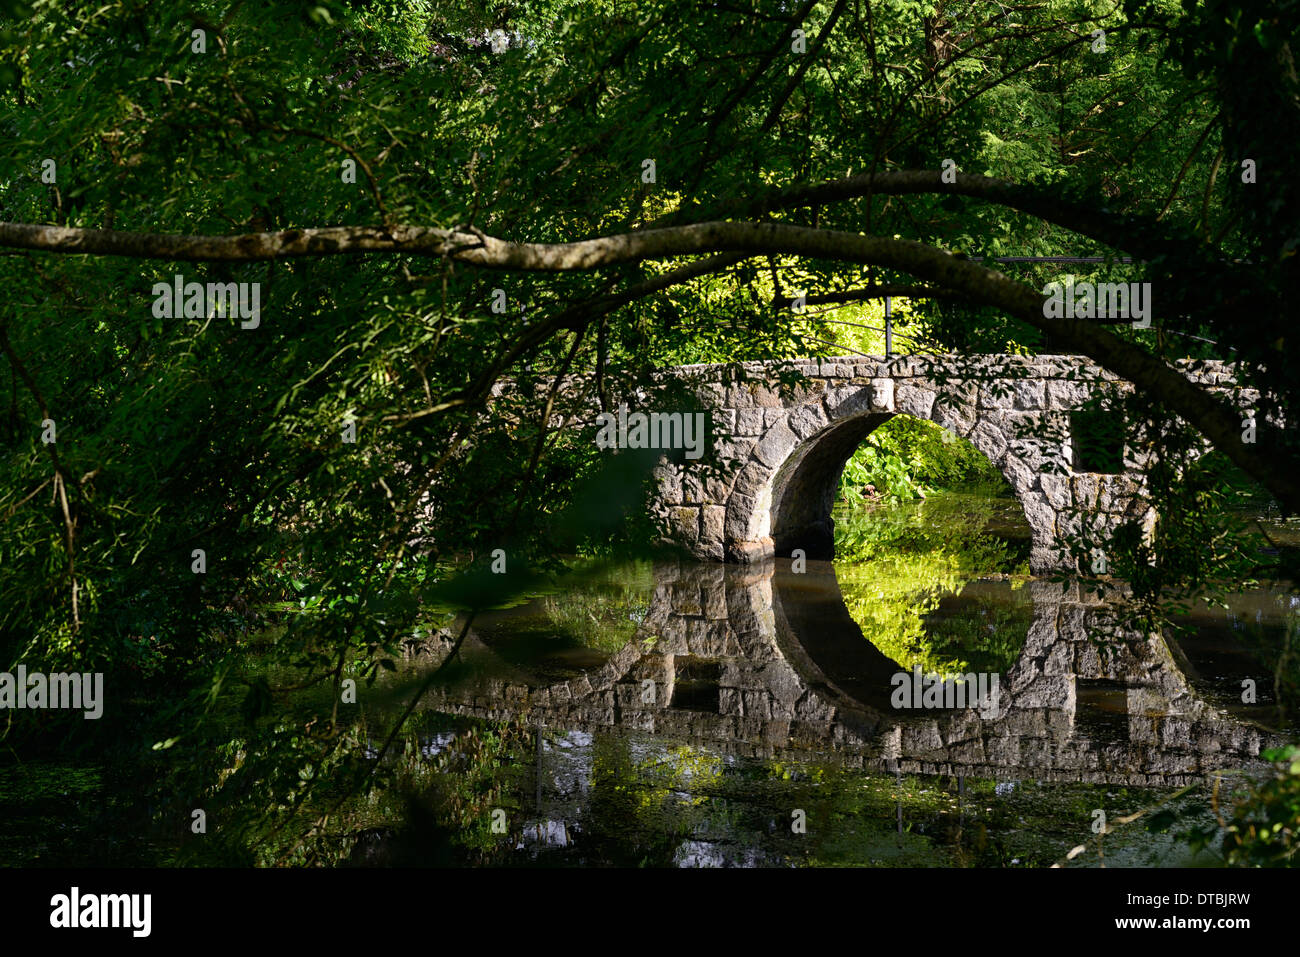 Stein-Bogenbrücke perfekte Spiegelung Rahmen gerahmt Baum Zweig Nadelbaum See Teich Altamont Gärten carlow Stockfoto